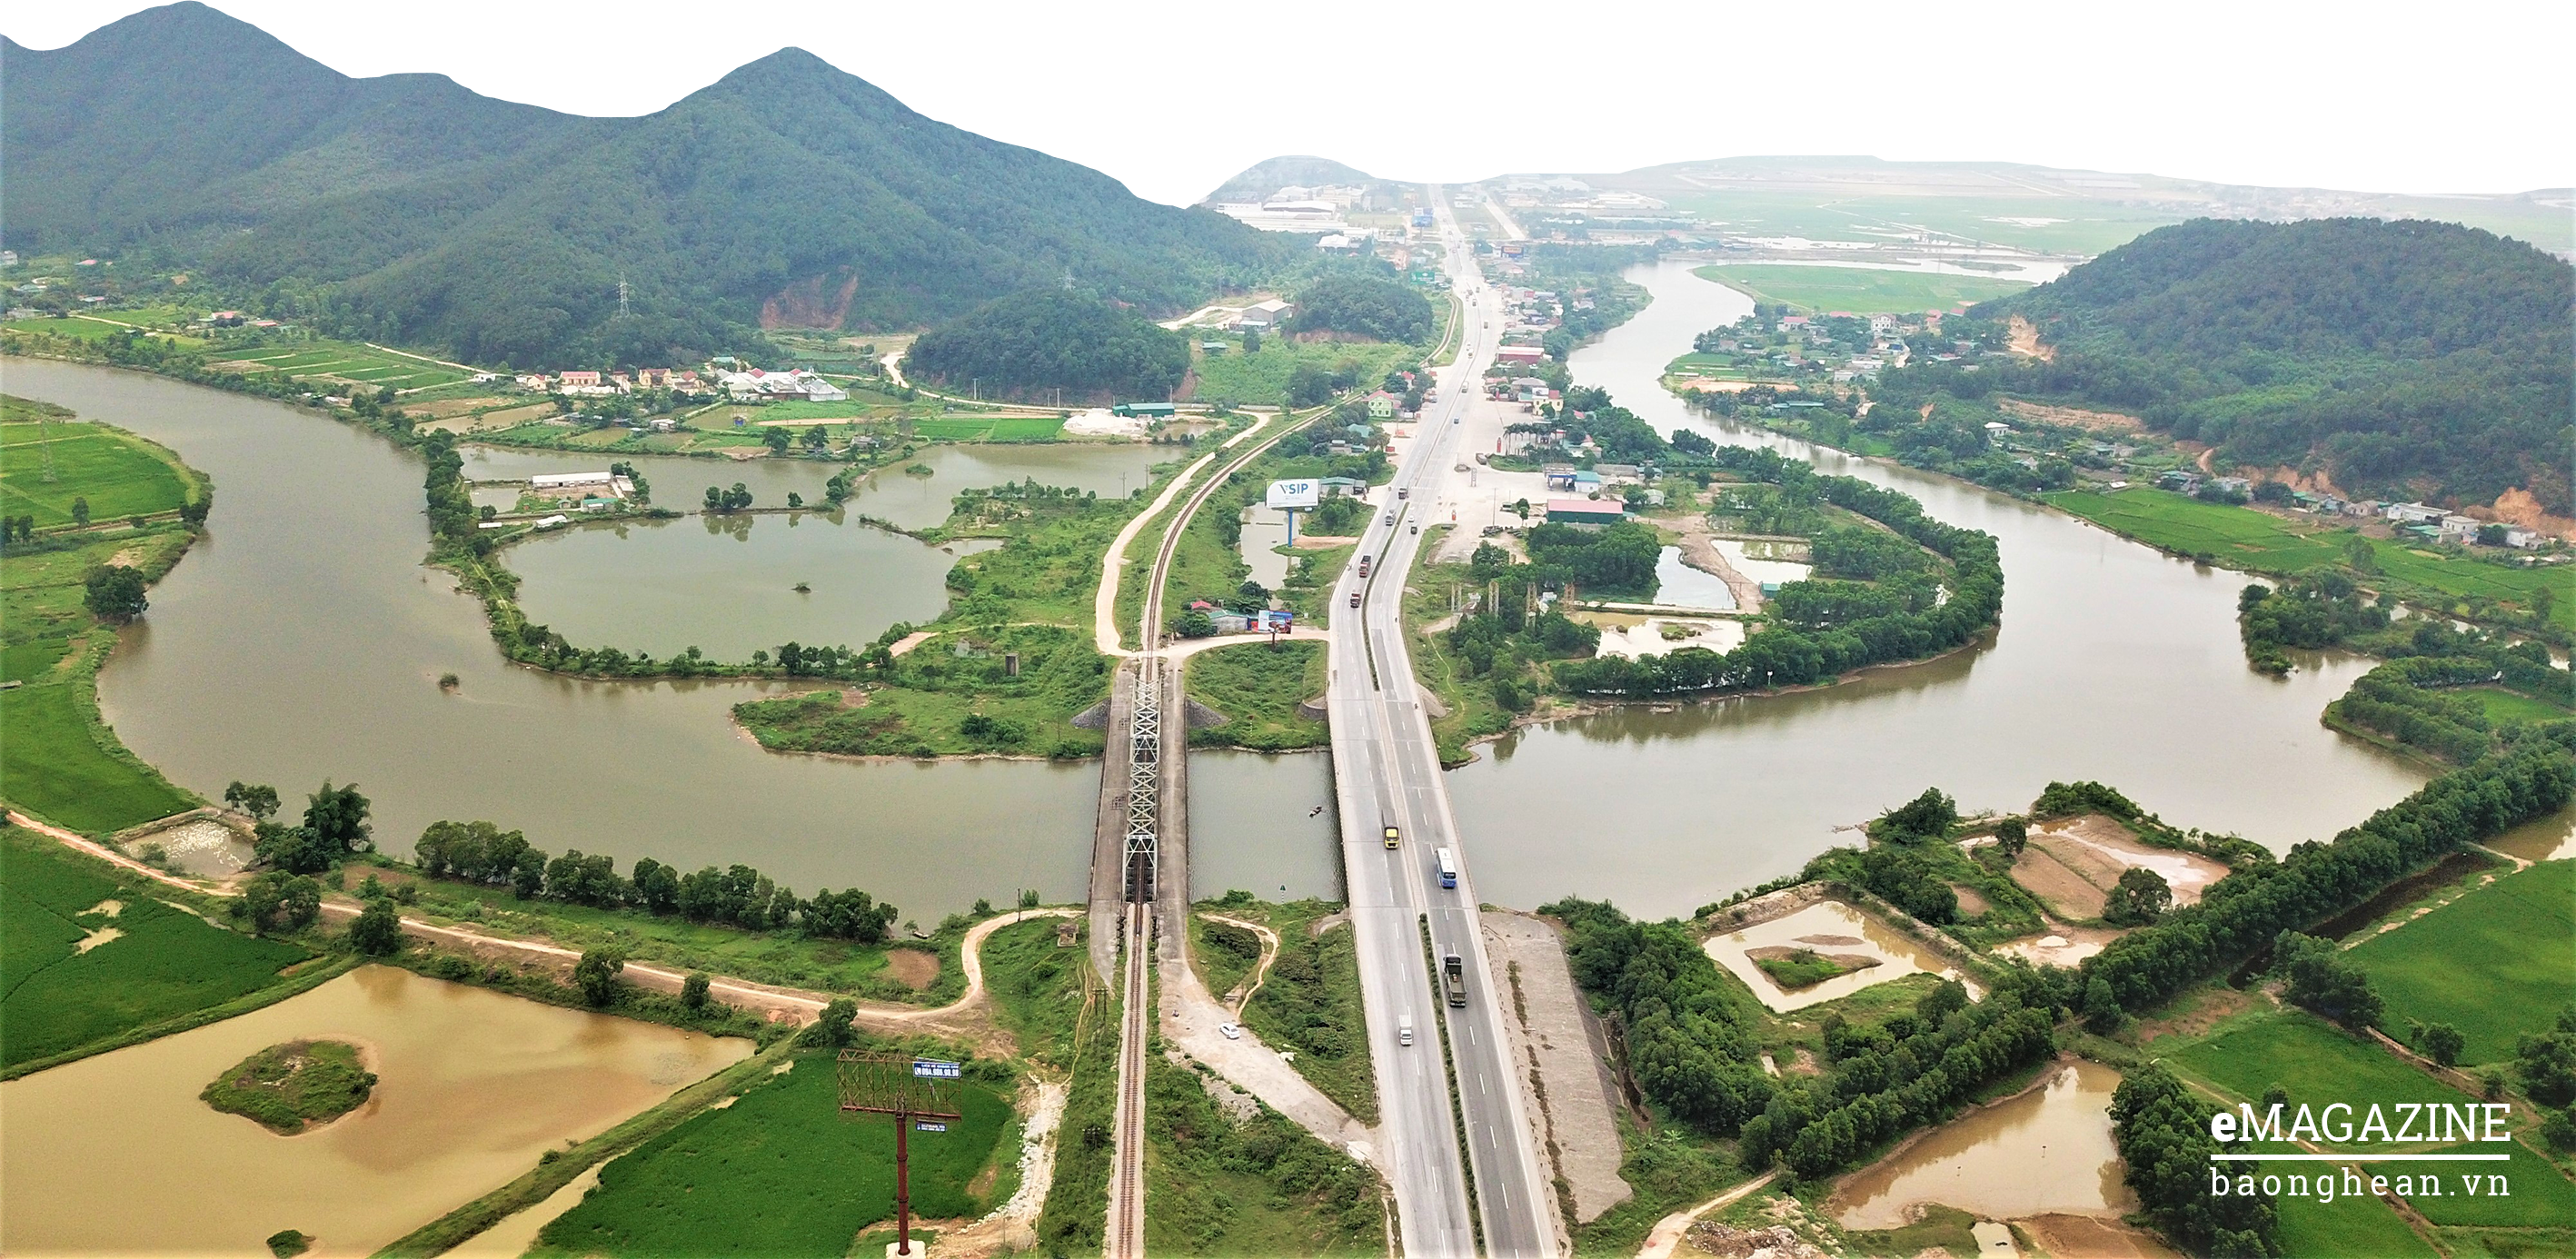 Đoạn kênh này bắt đầu từ sông Cấm ở huyện Nghi Lộc